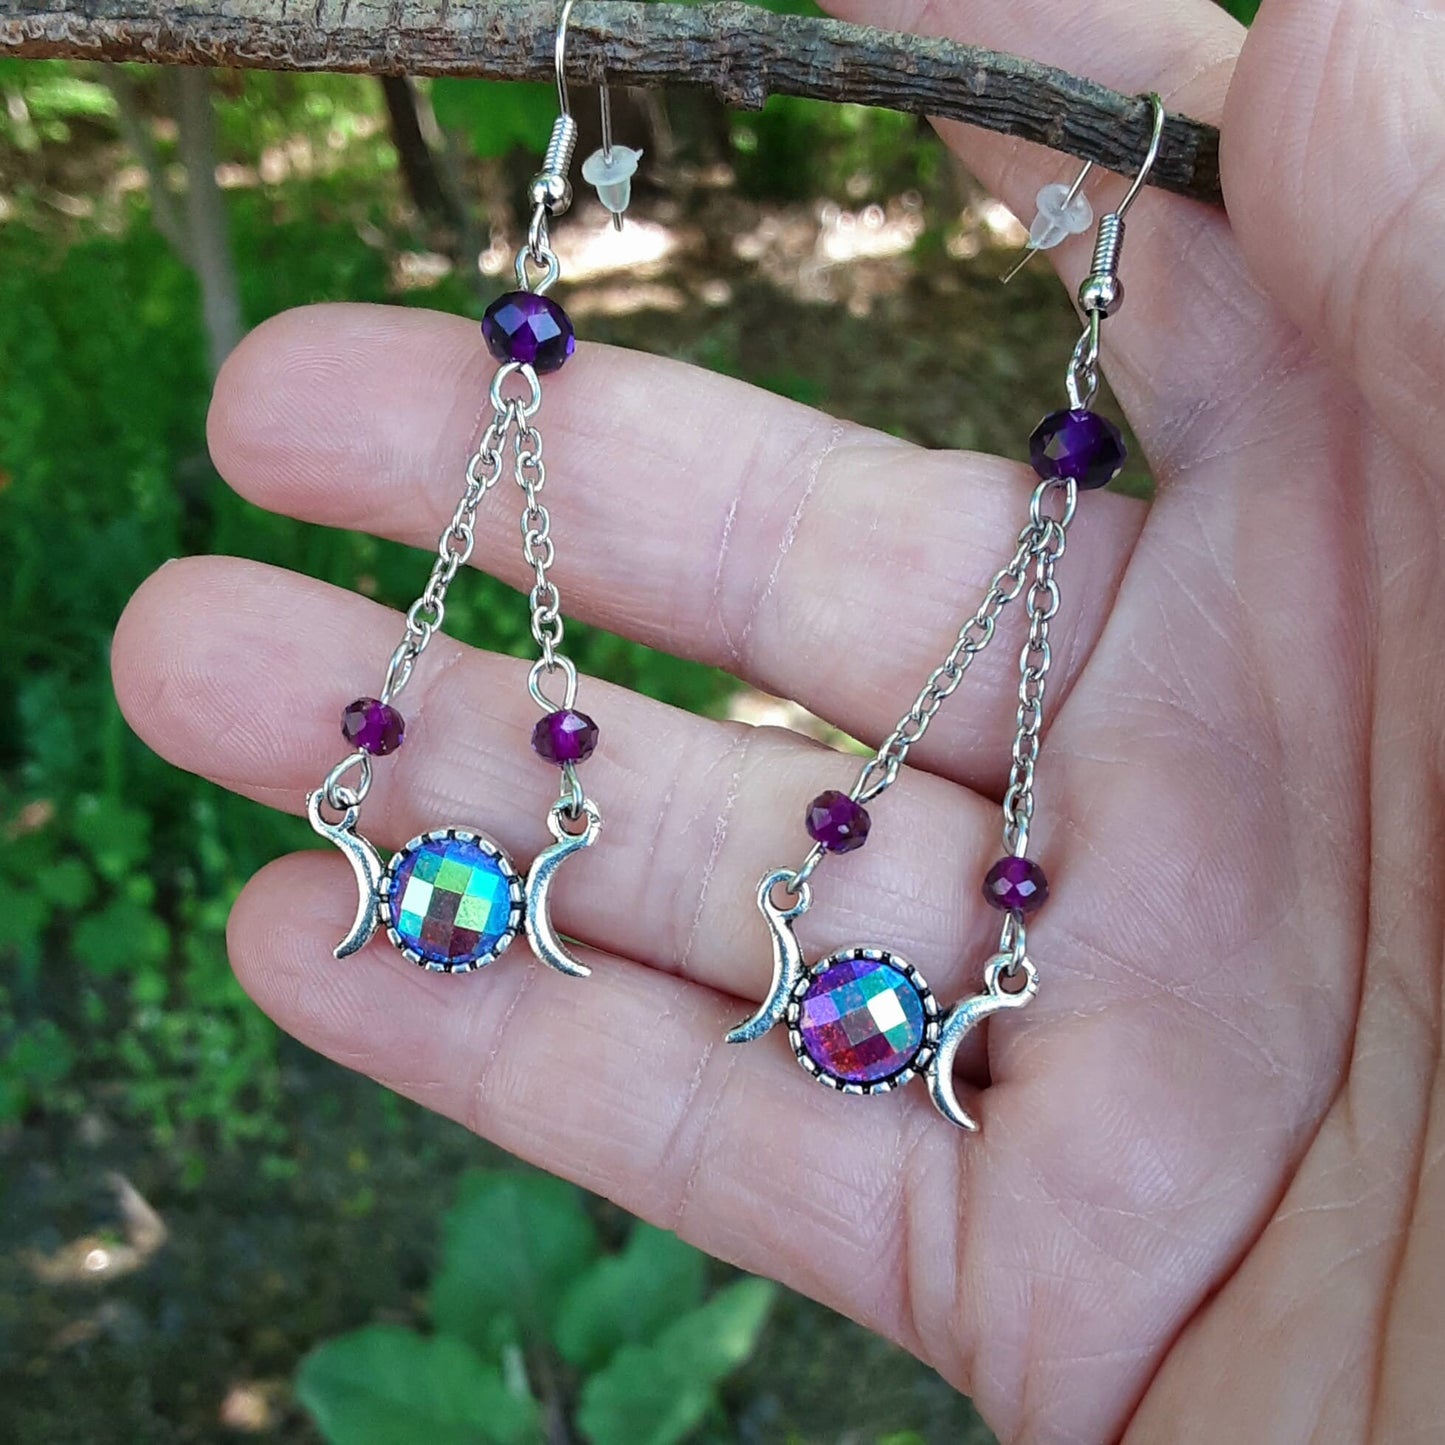 Triple Moon Goddess AB Purple Dangle Chandelier Earrings- One of a kind